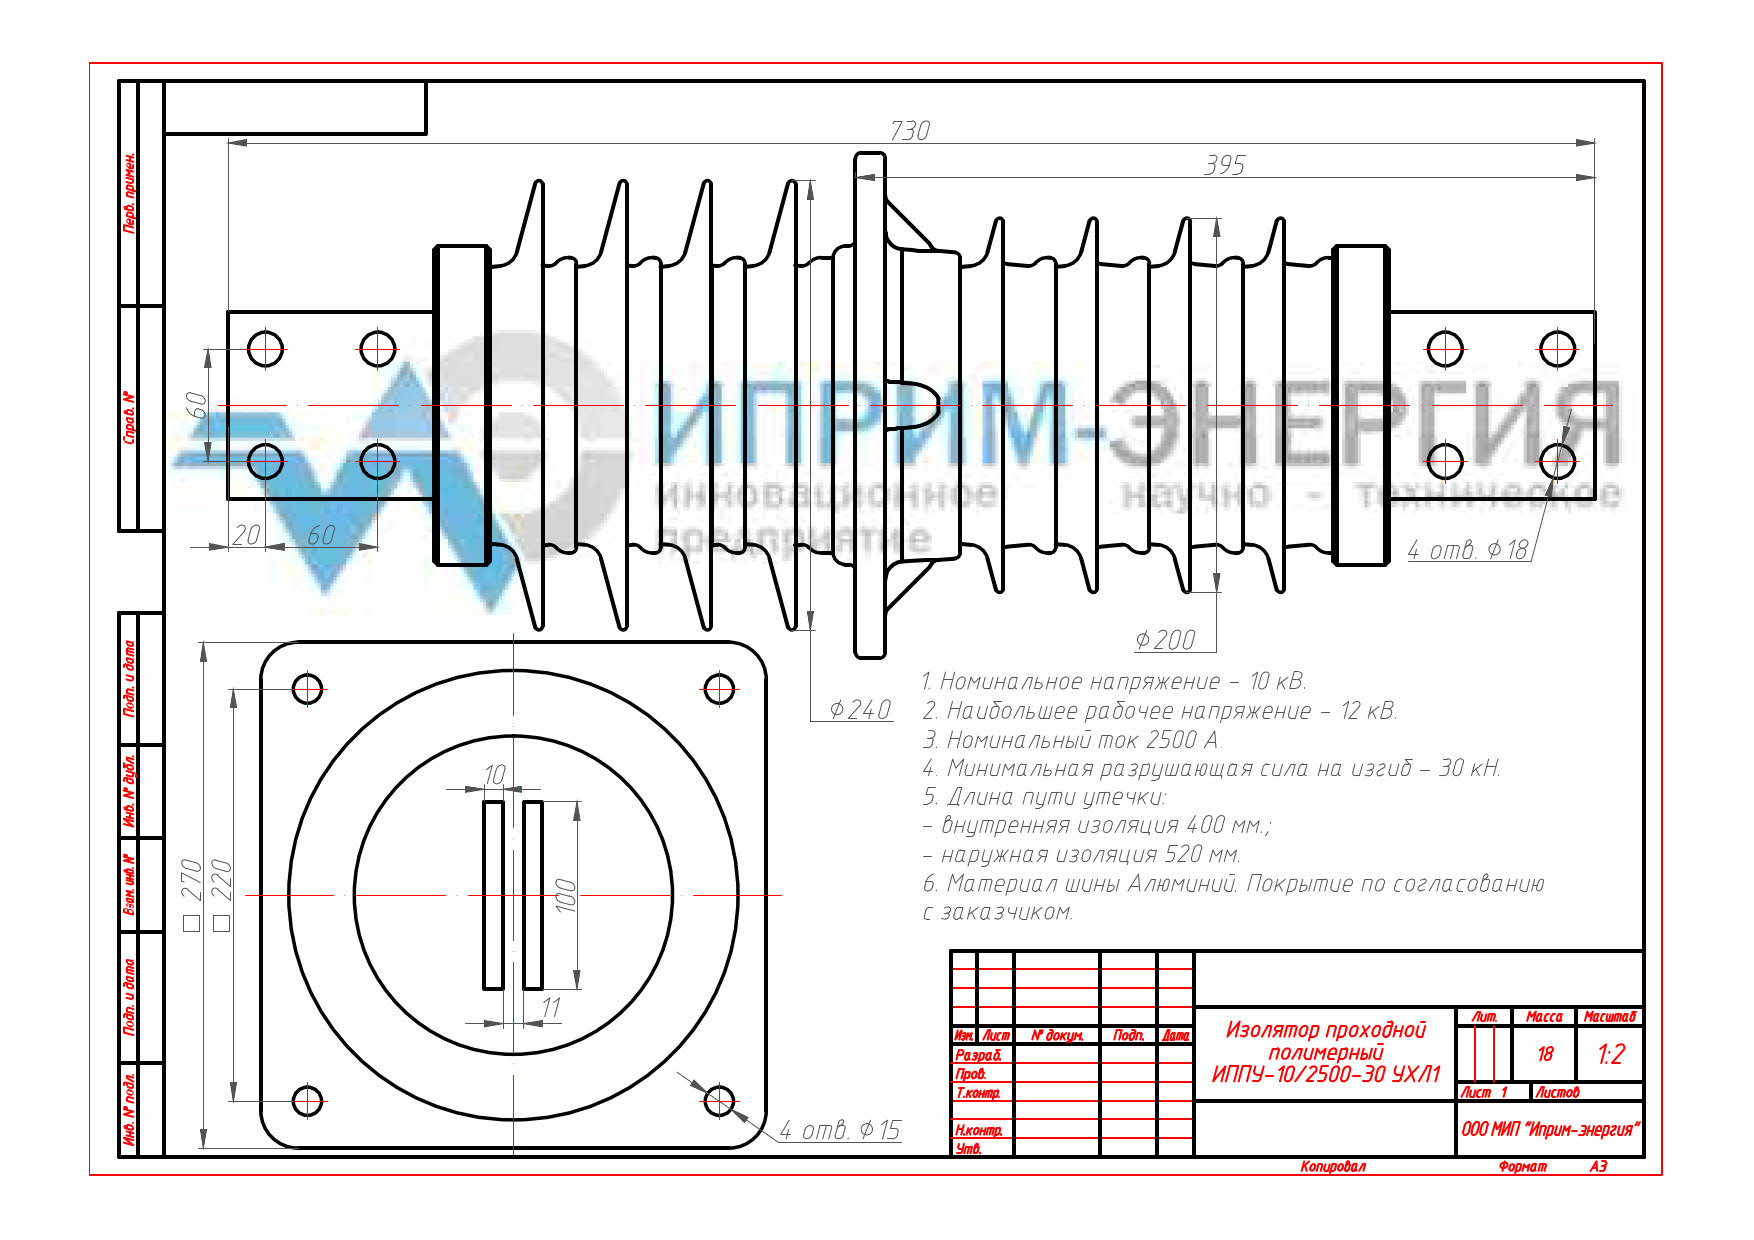 Изолятор проходной полимерный ИППУ-10/2500-30 УХЛ1 чертеж